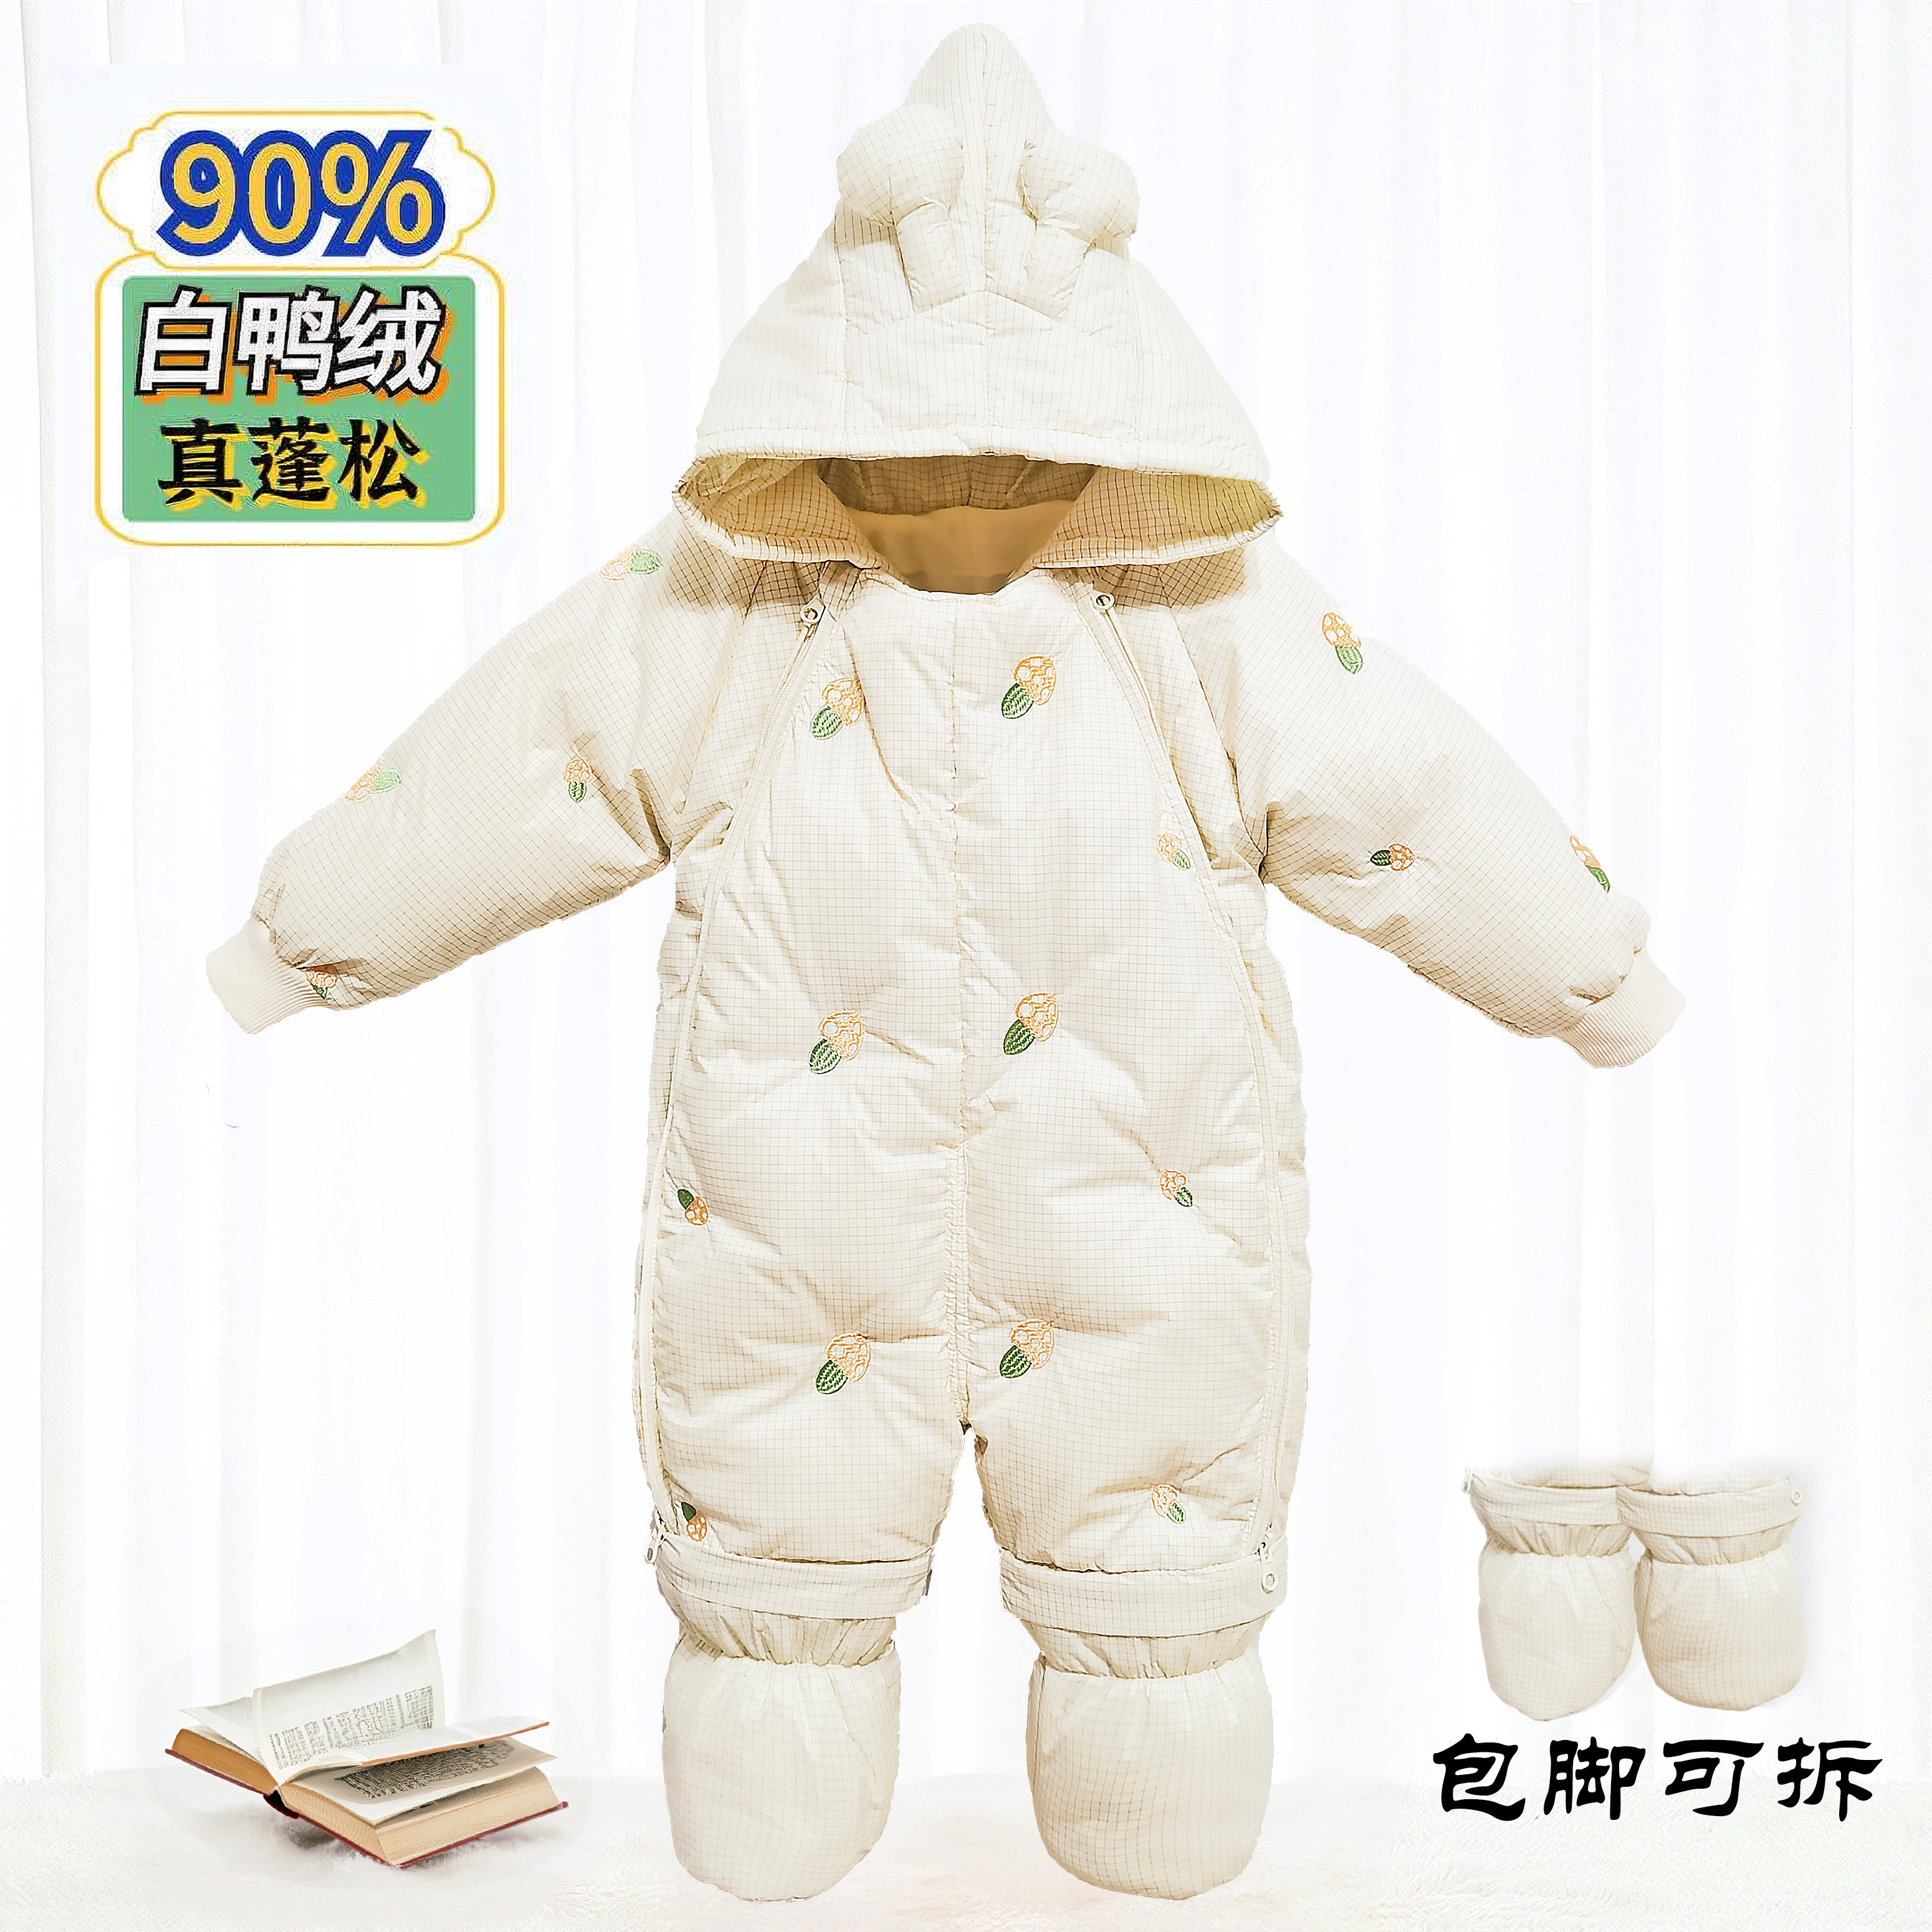 婴儿羽绒服连体衣抱冬季衣服宝宝加厚外出服新生儿包脚白鸭绒外套